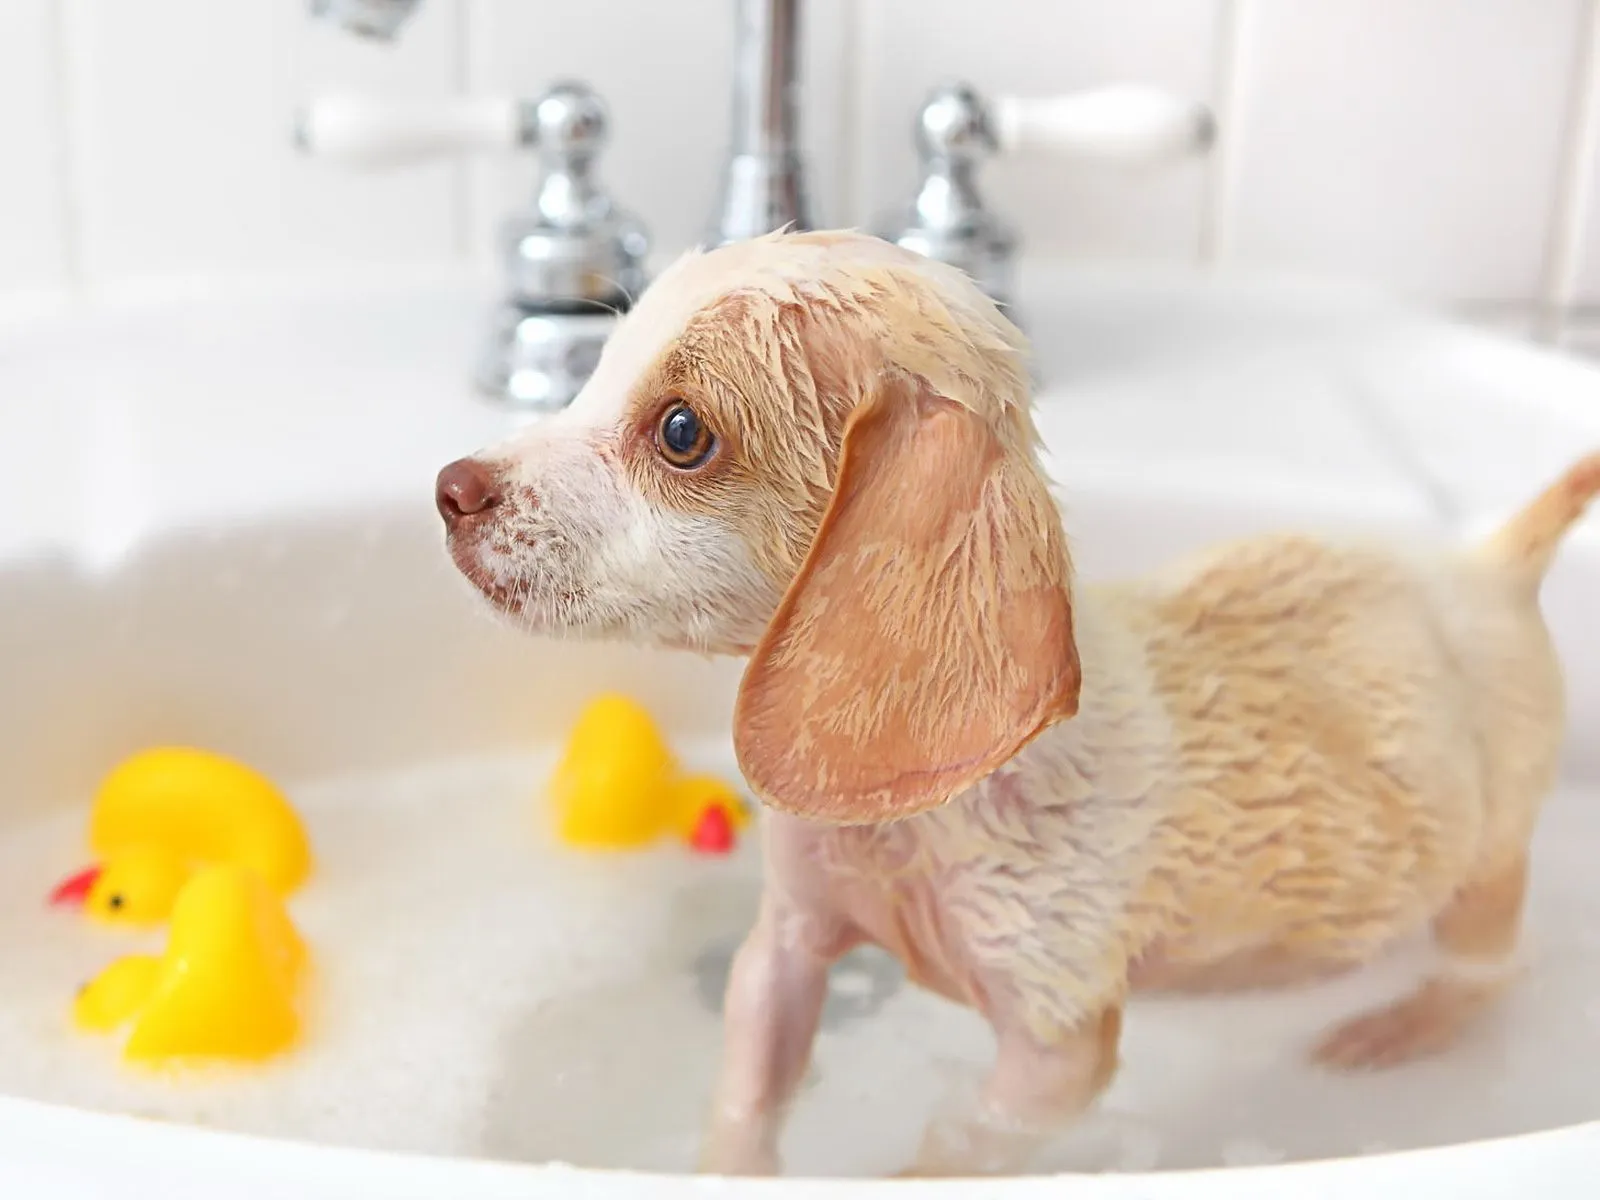 Fotos de lindo perrito bañandose ~ Mejores Fotos del Mundo ...